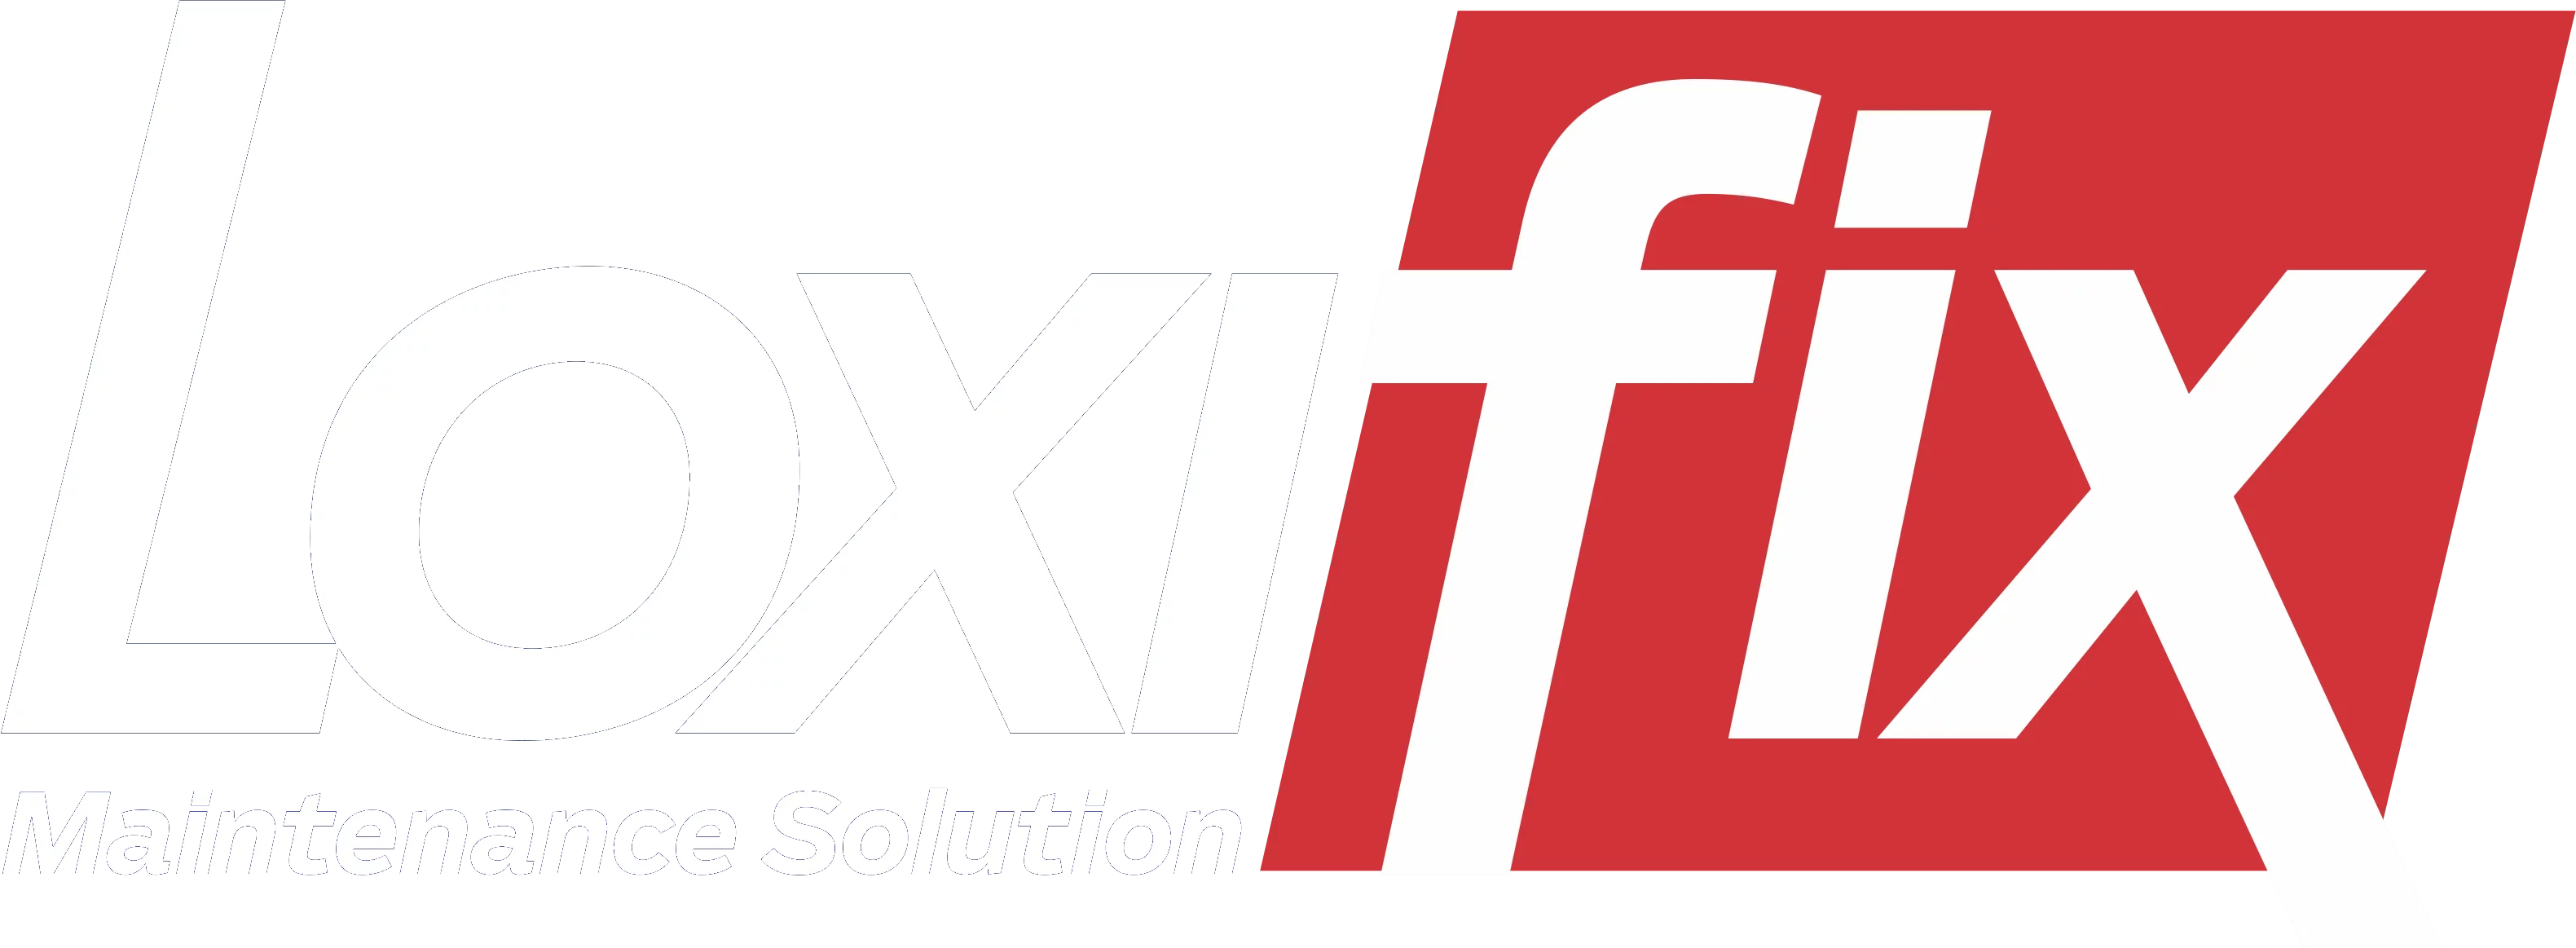 Loxifix logo finaal2155